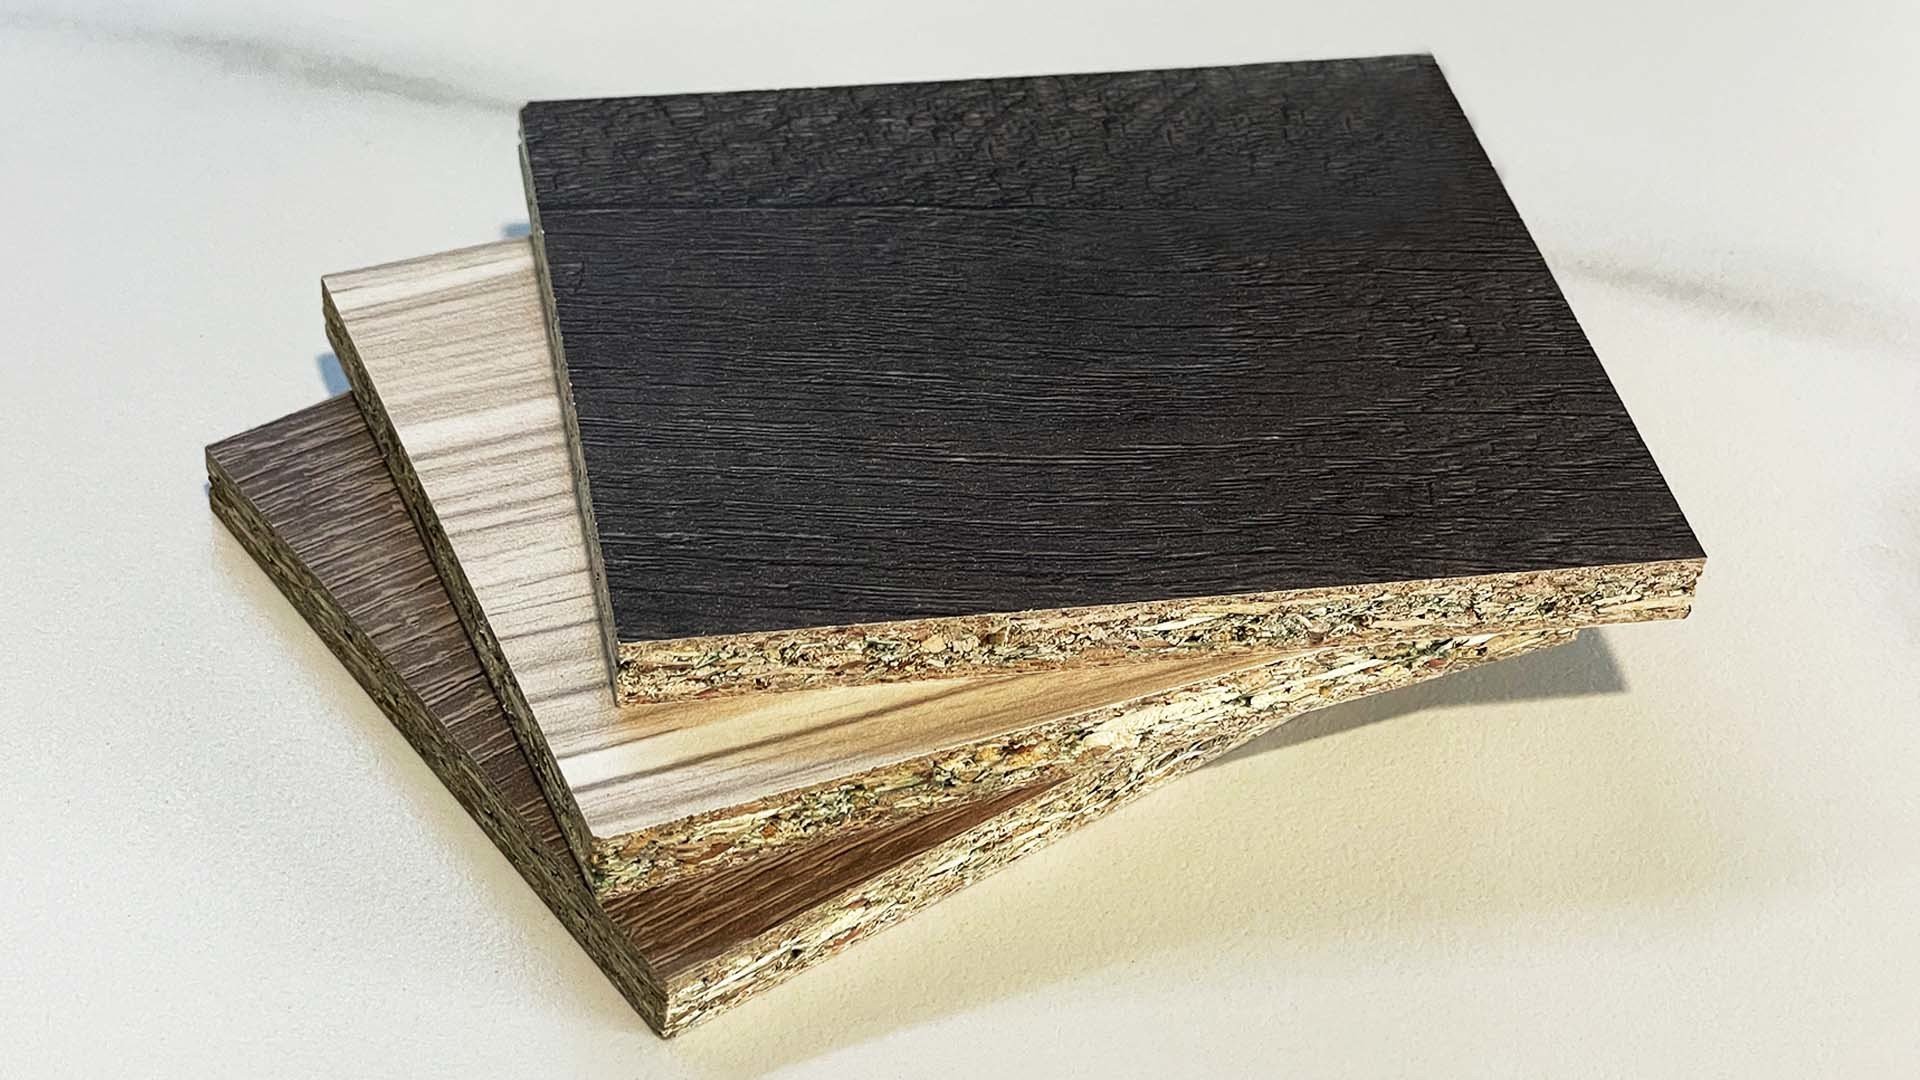 塑合板製成方式與密集板類似，密度也高於密集板。將細碎木屑加膠合劑黏合後，以高溫高壓製成後，外層再貼上一層美耐皿。